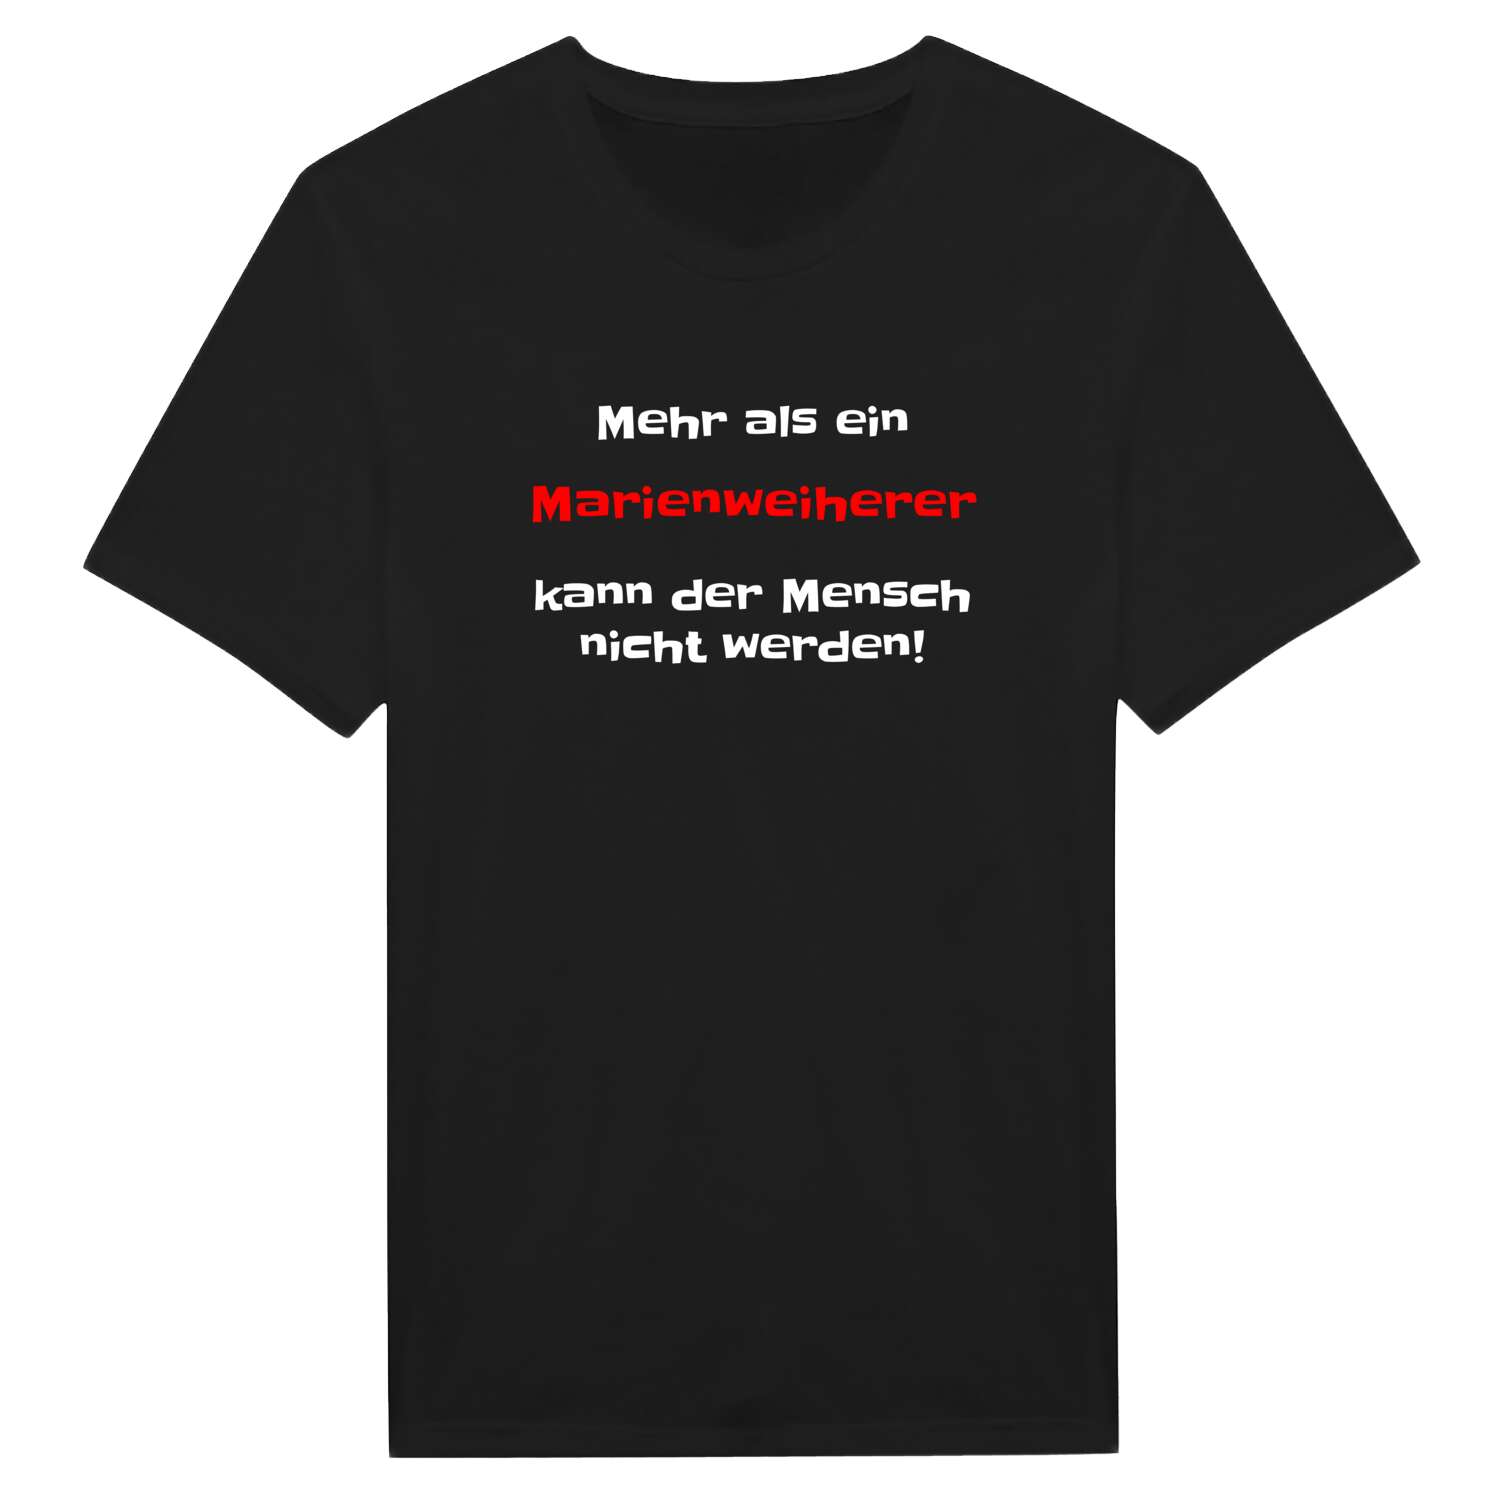 Marienweiher T-Shirt »Mehr als ein«